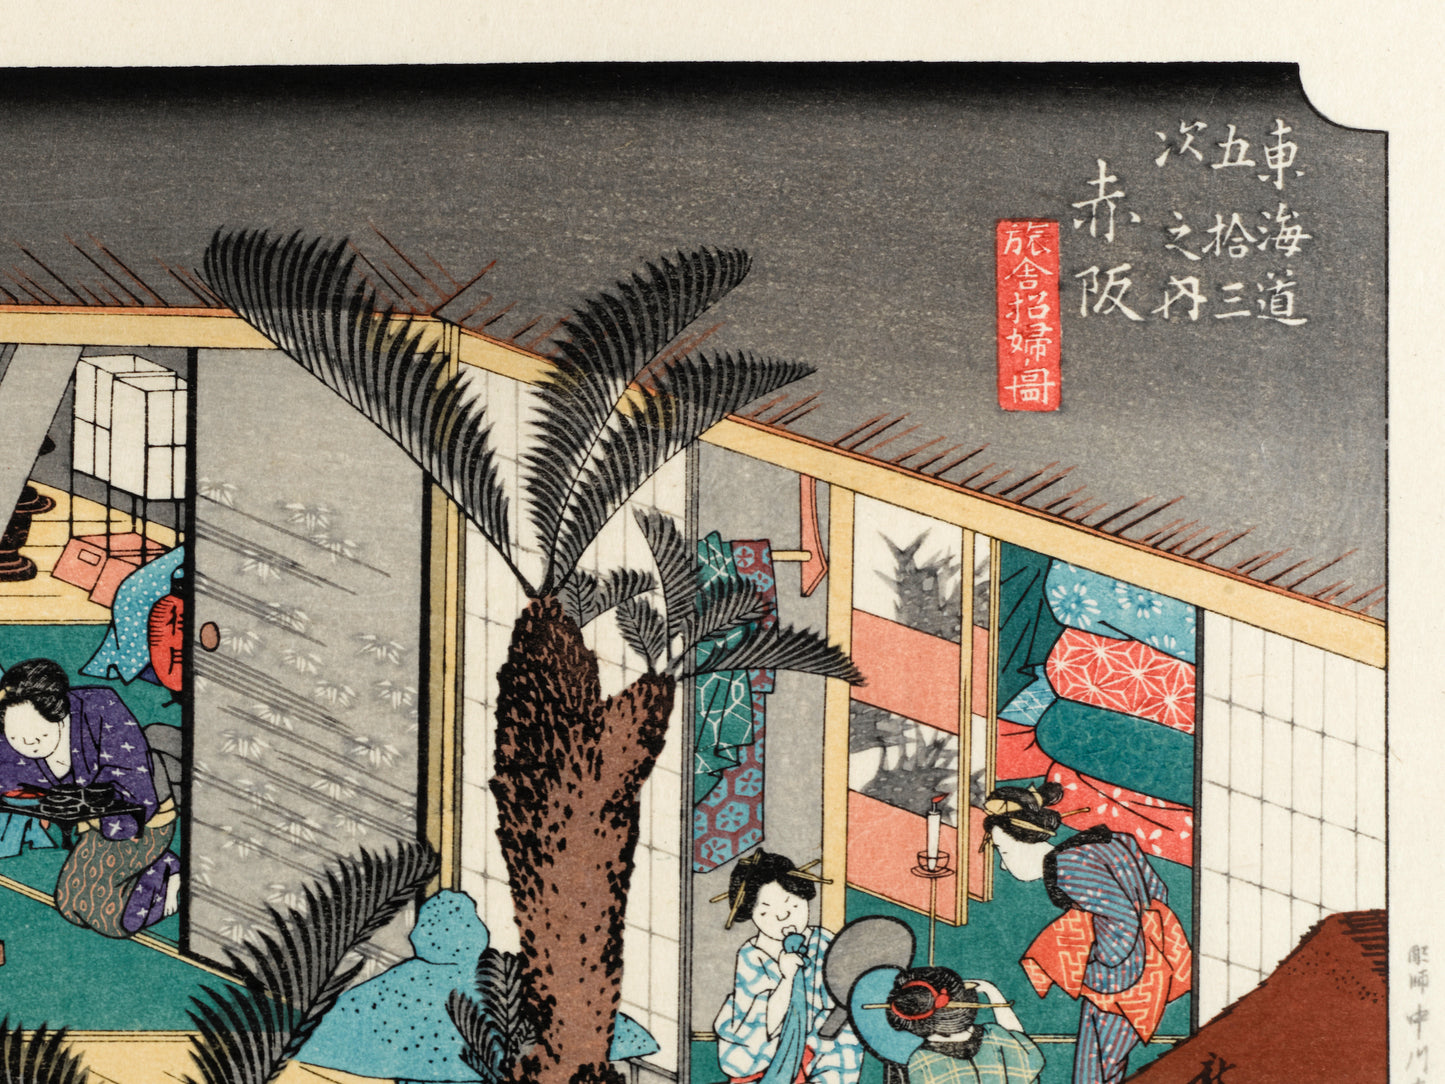 estampe japonaise intérieur d'une auberge avec voyageurs et geishas, calligraphie japonaise